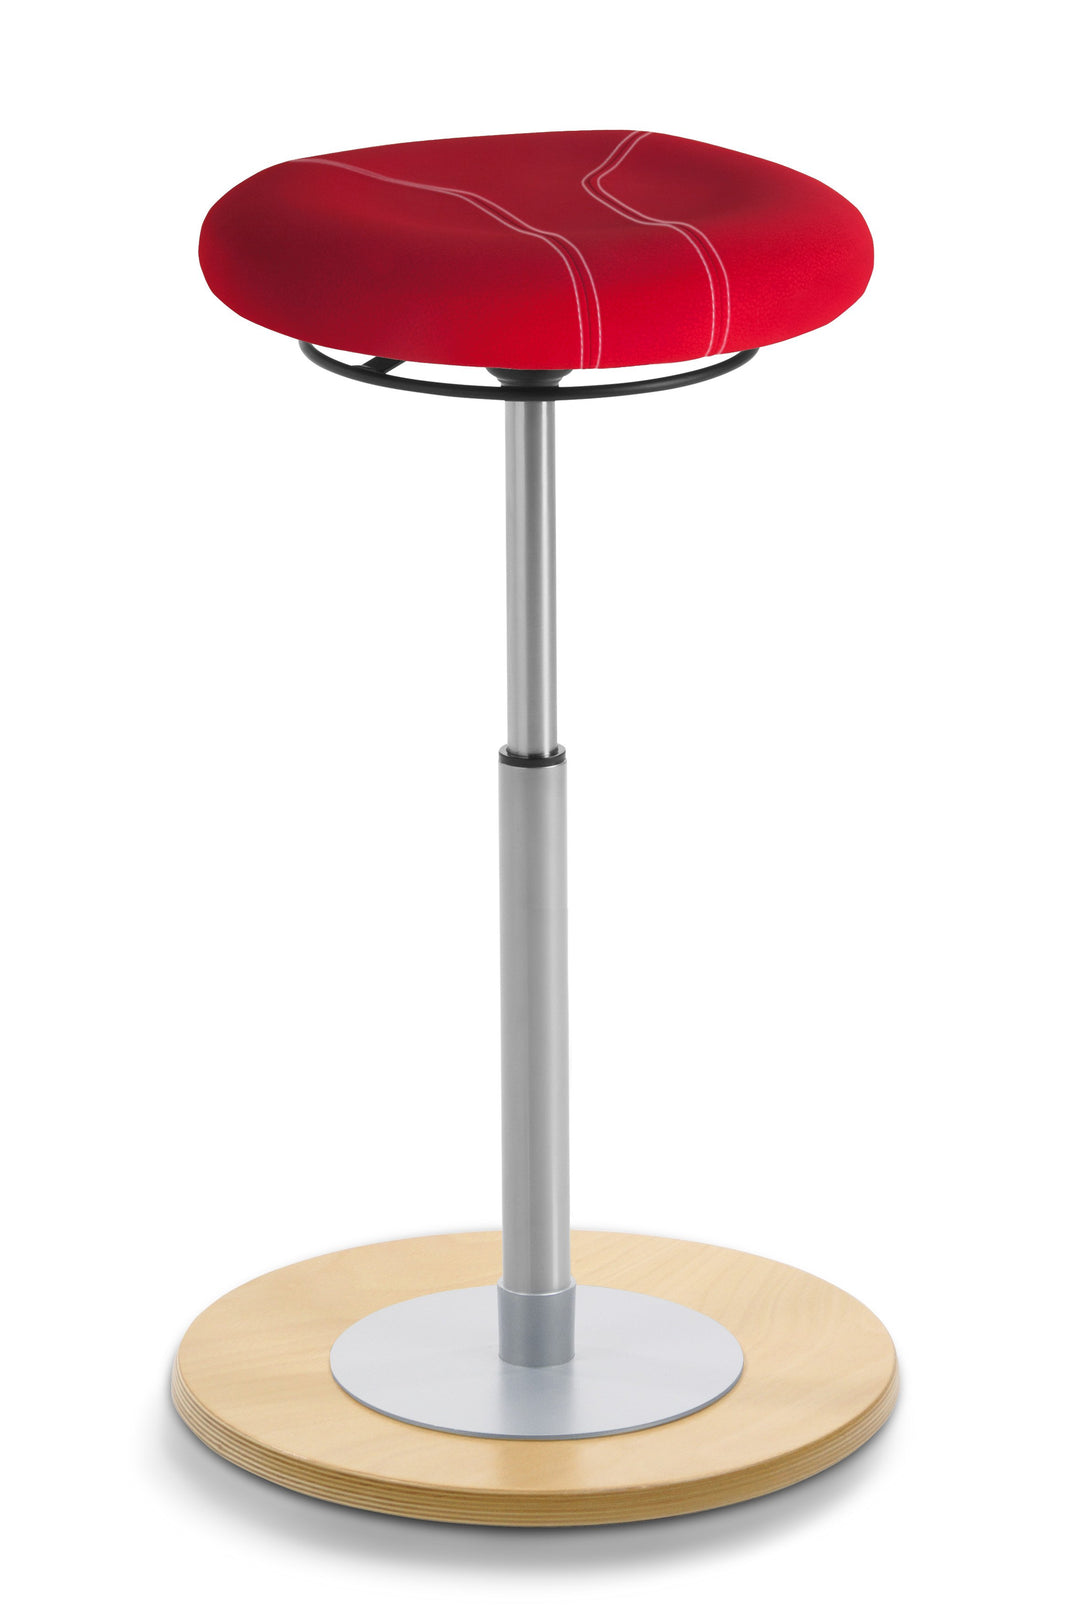 Mayer MyErgosit Taboret Krzesło Stołek balansujący płaski 54-79cm podstawa sklejka naturalna 1110 N